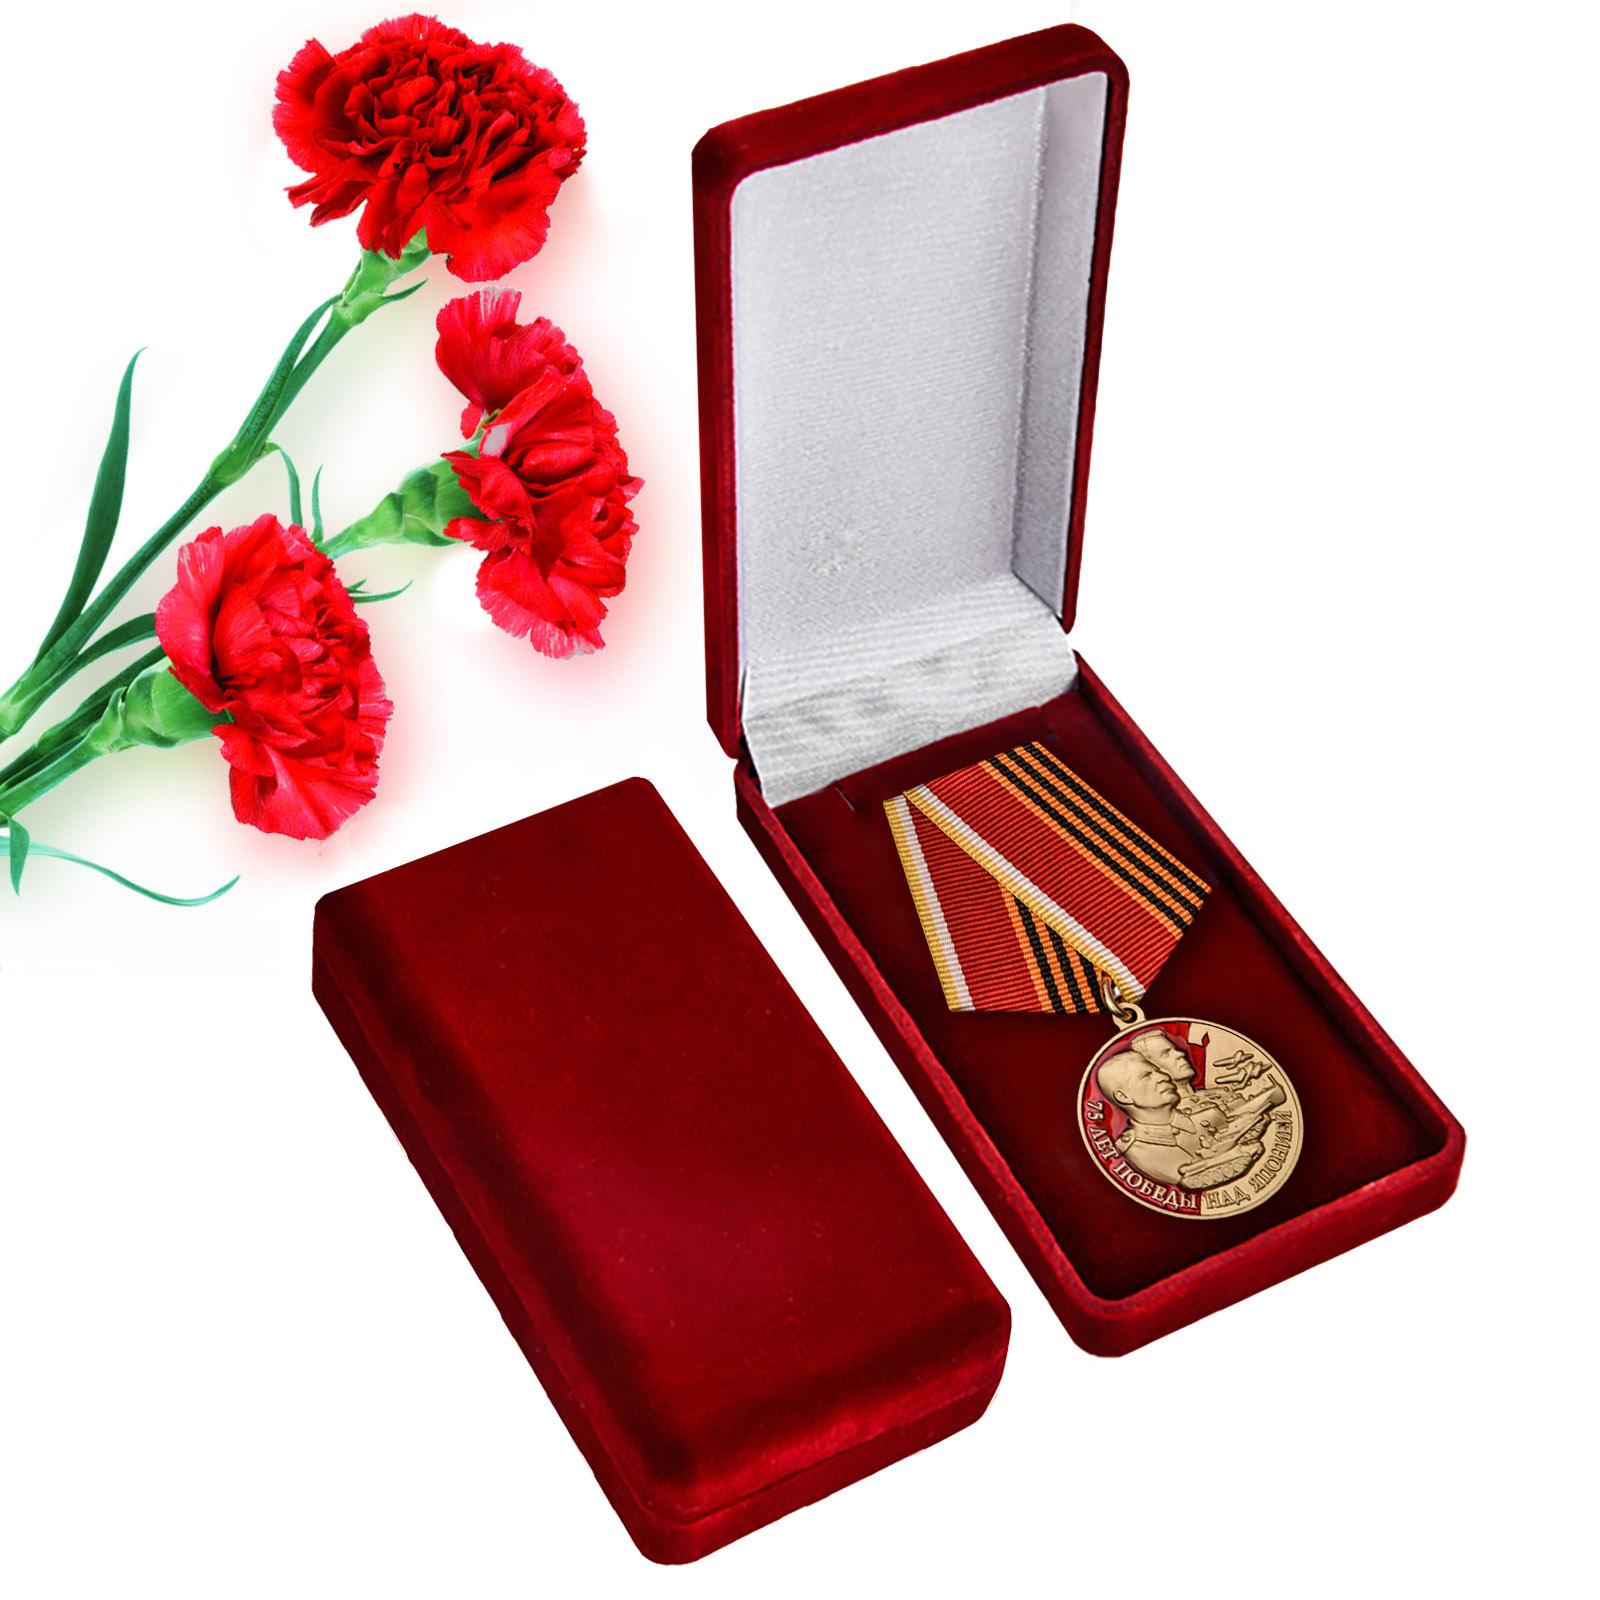 Купить медаль 75 лет Победы над Японией по экономичной цене